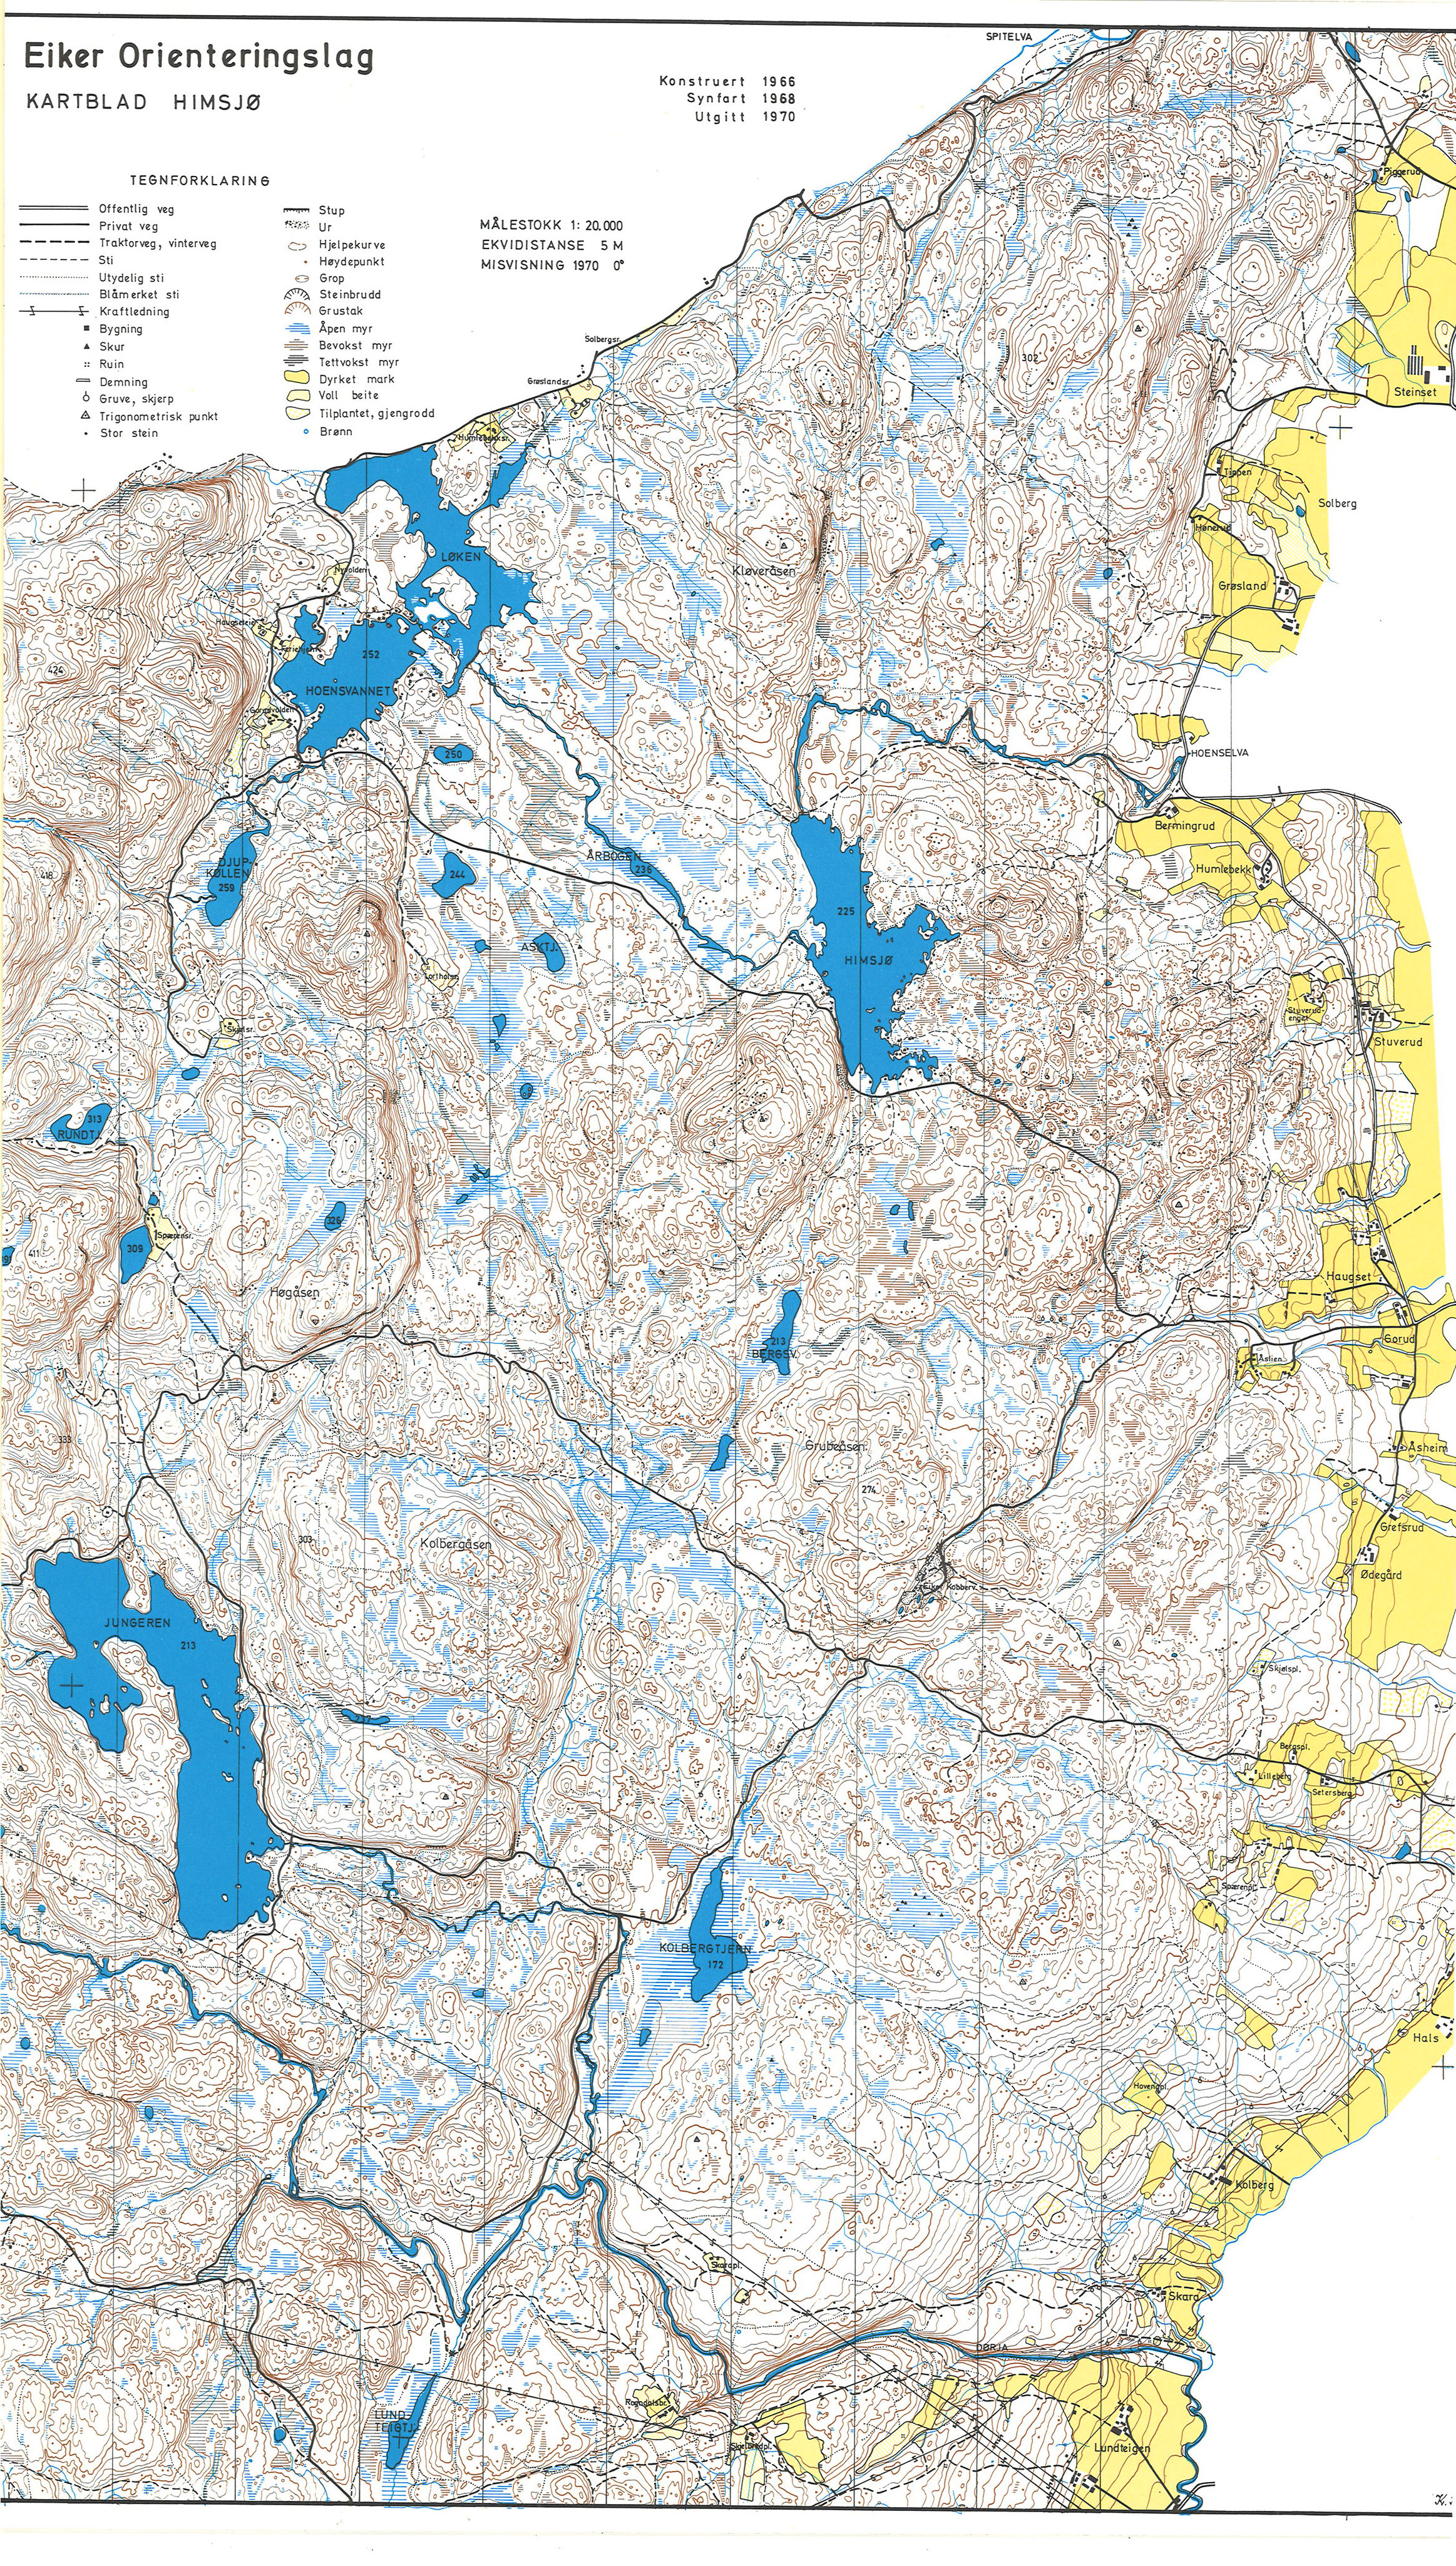 Himsjø (01-05-1970)